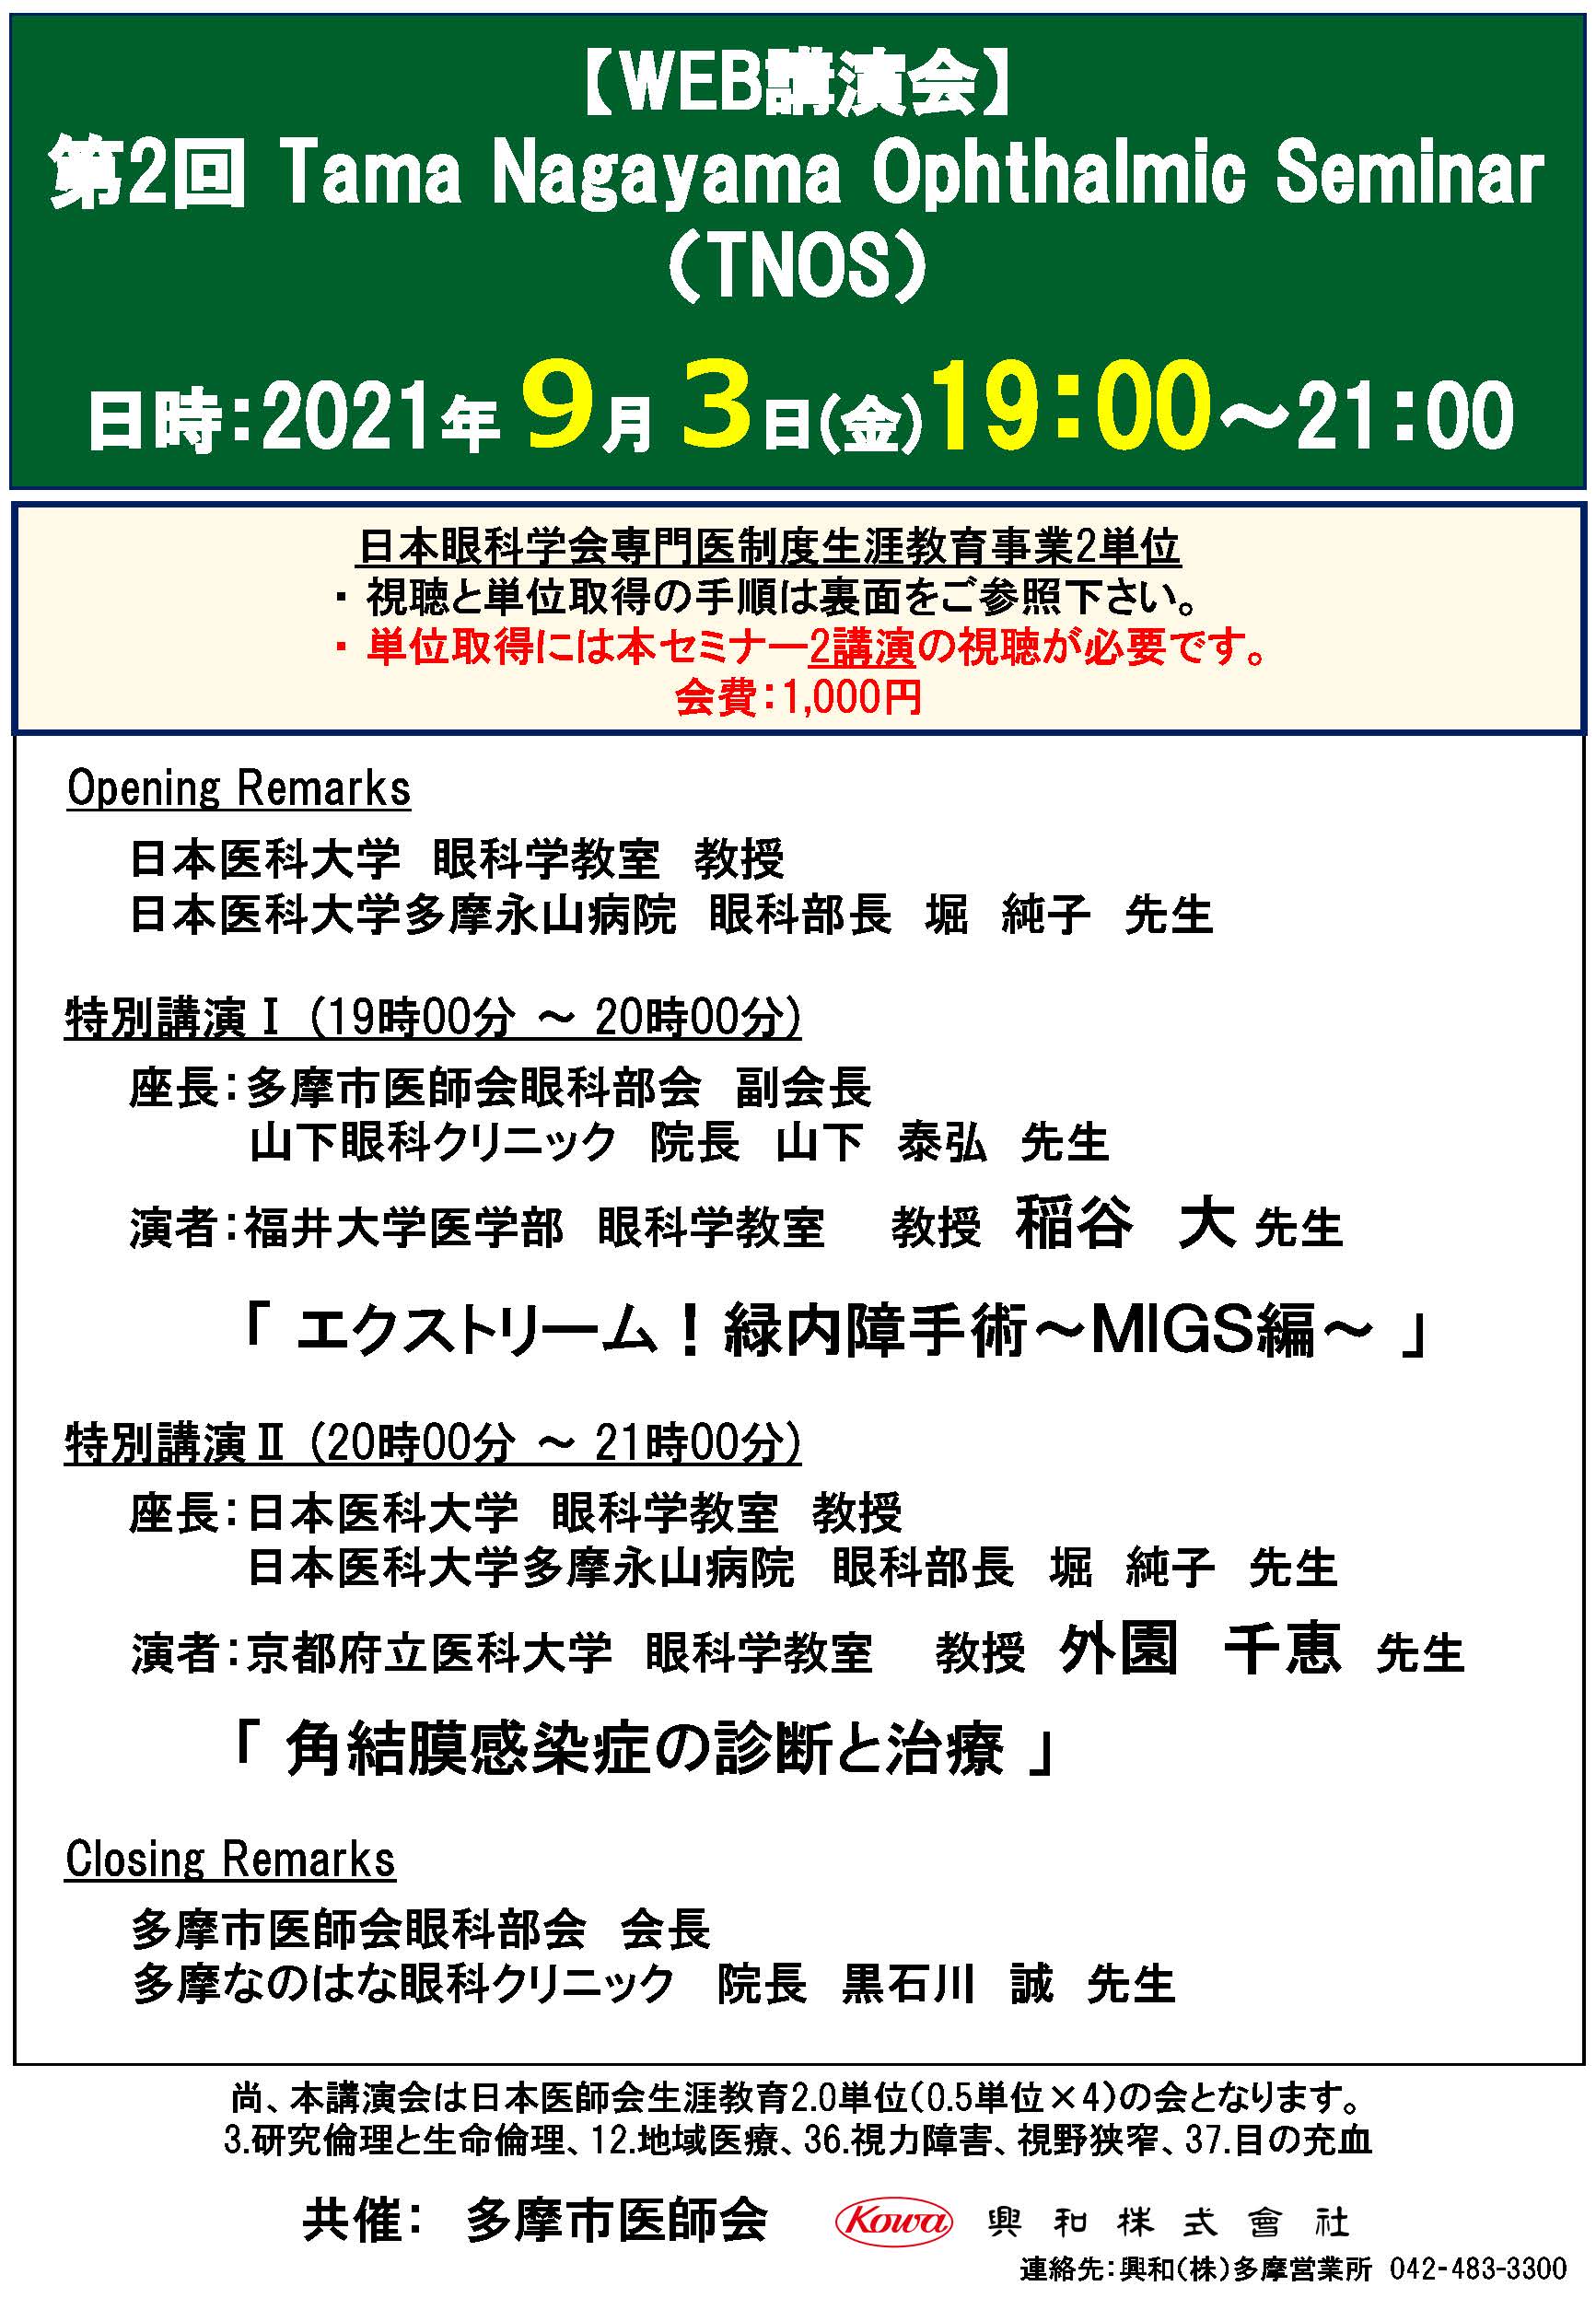 【案内状】第２回 Tama Nagayama Ophthalmic Seminar_ページ_1